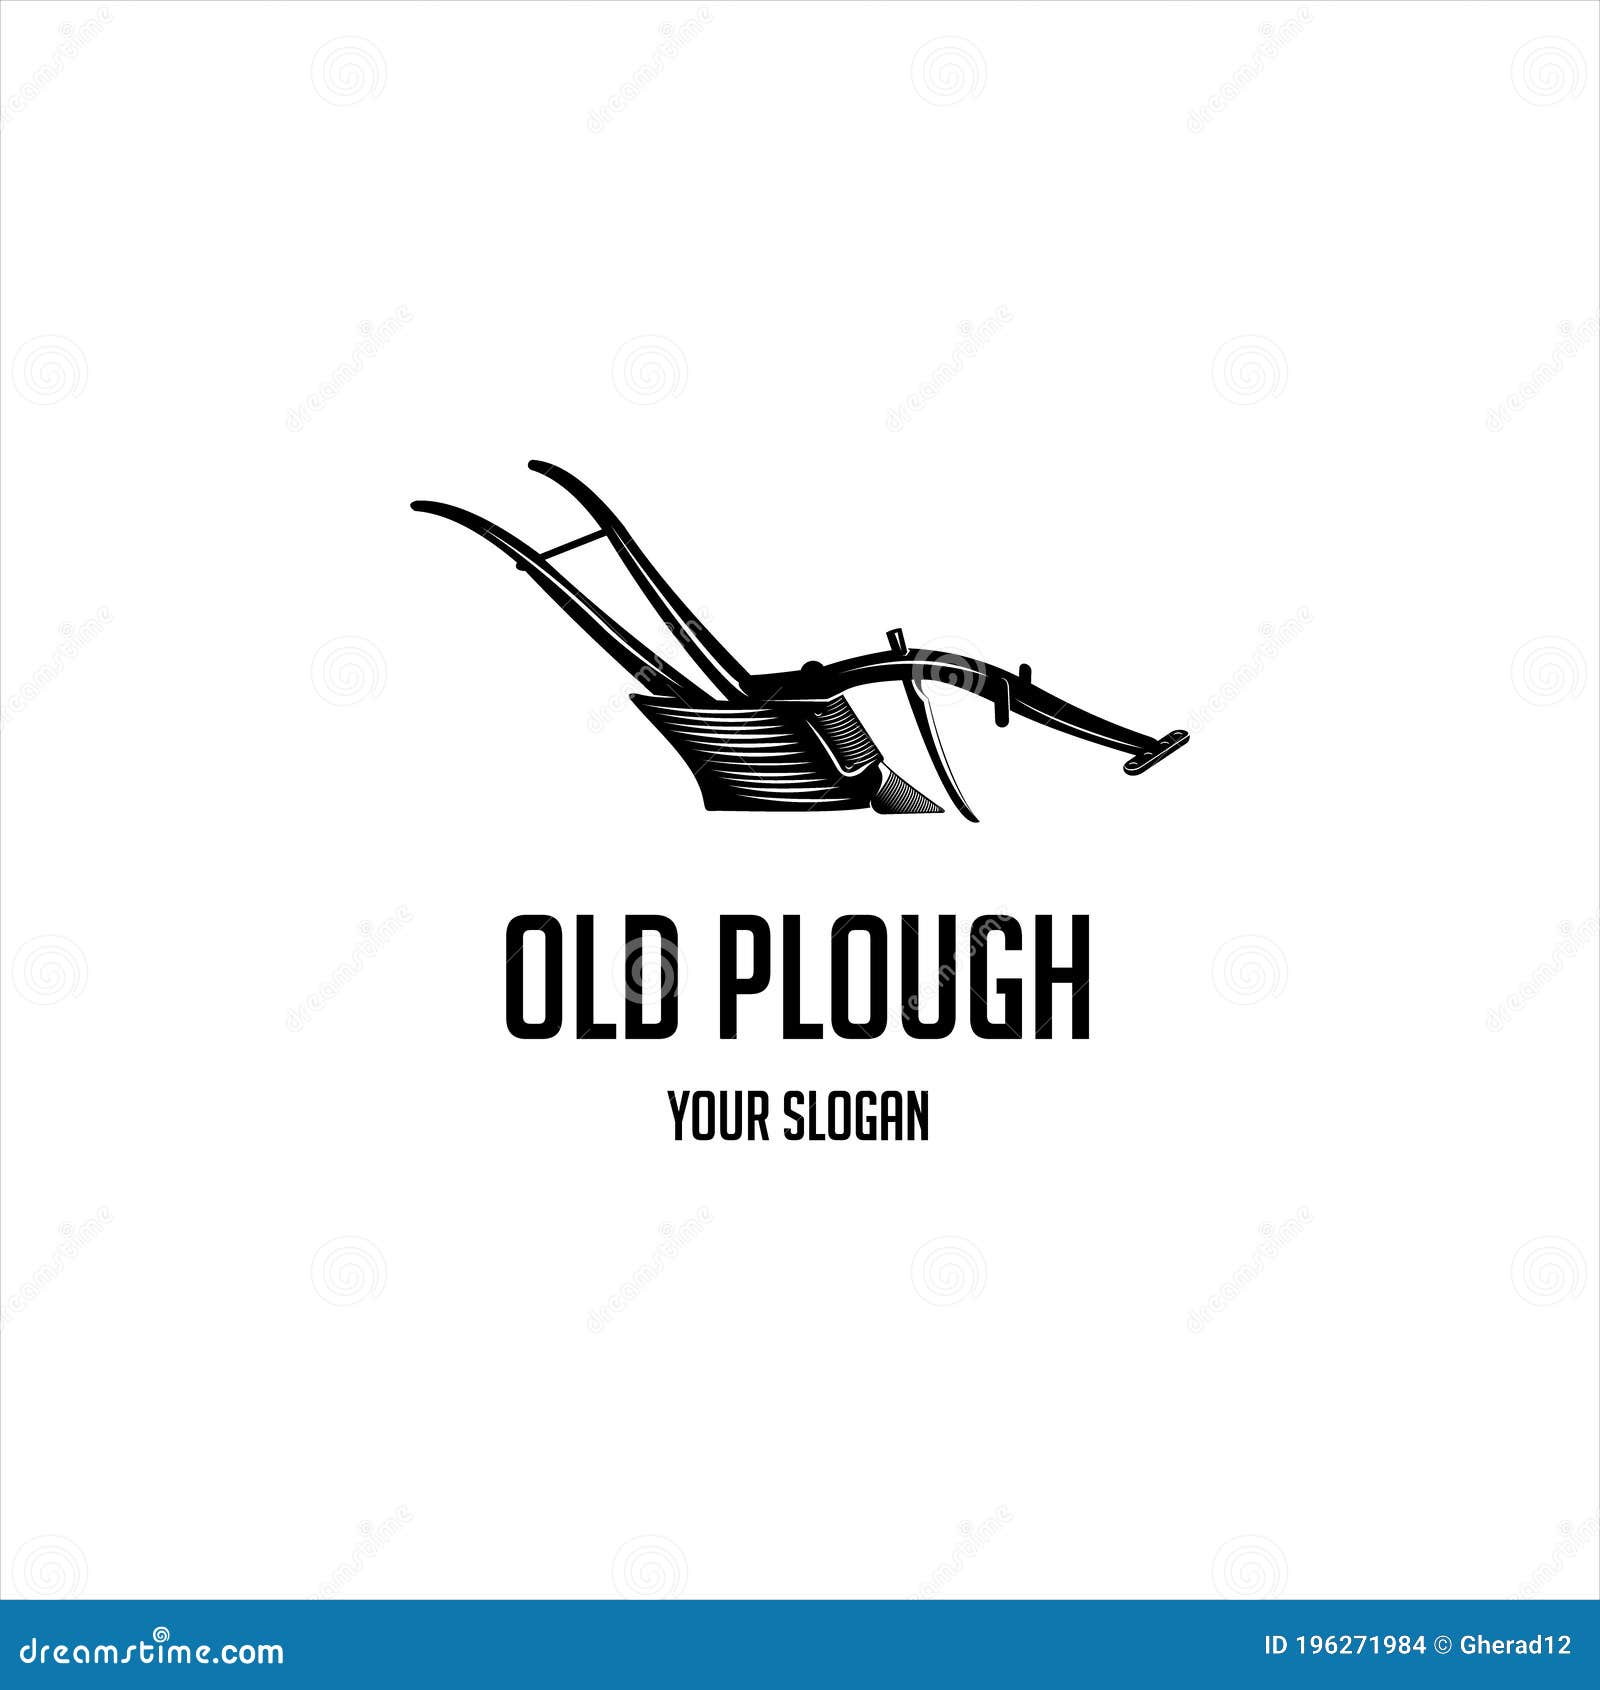 old plough vintage logo